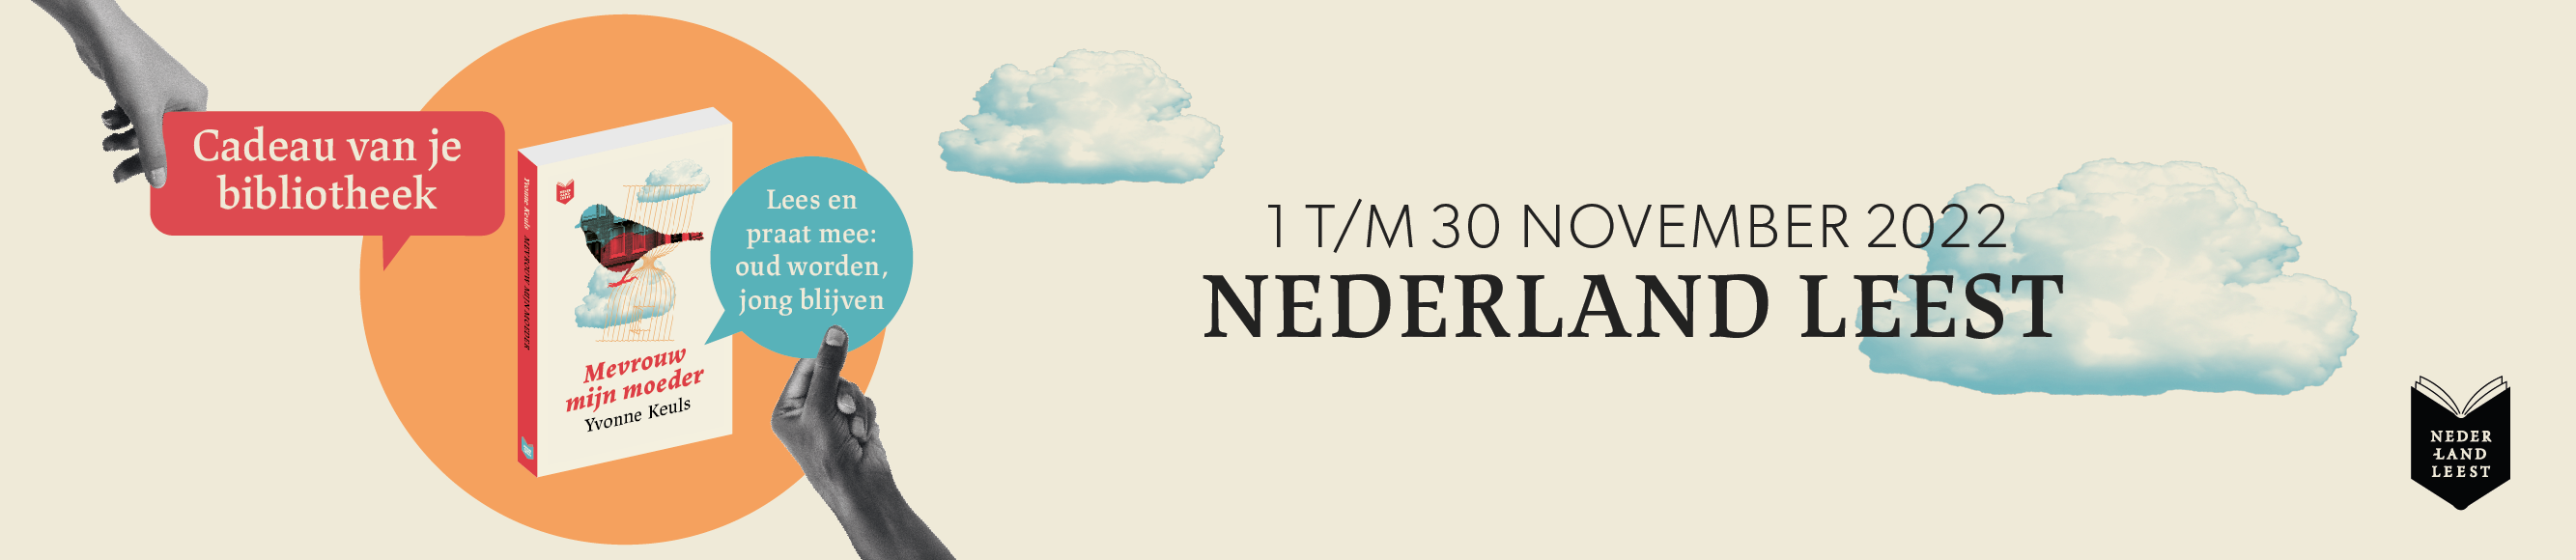 Nederland Leest Website banner 1280X278 DEF